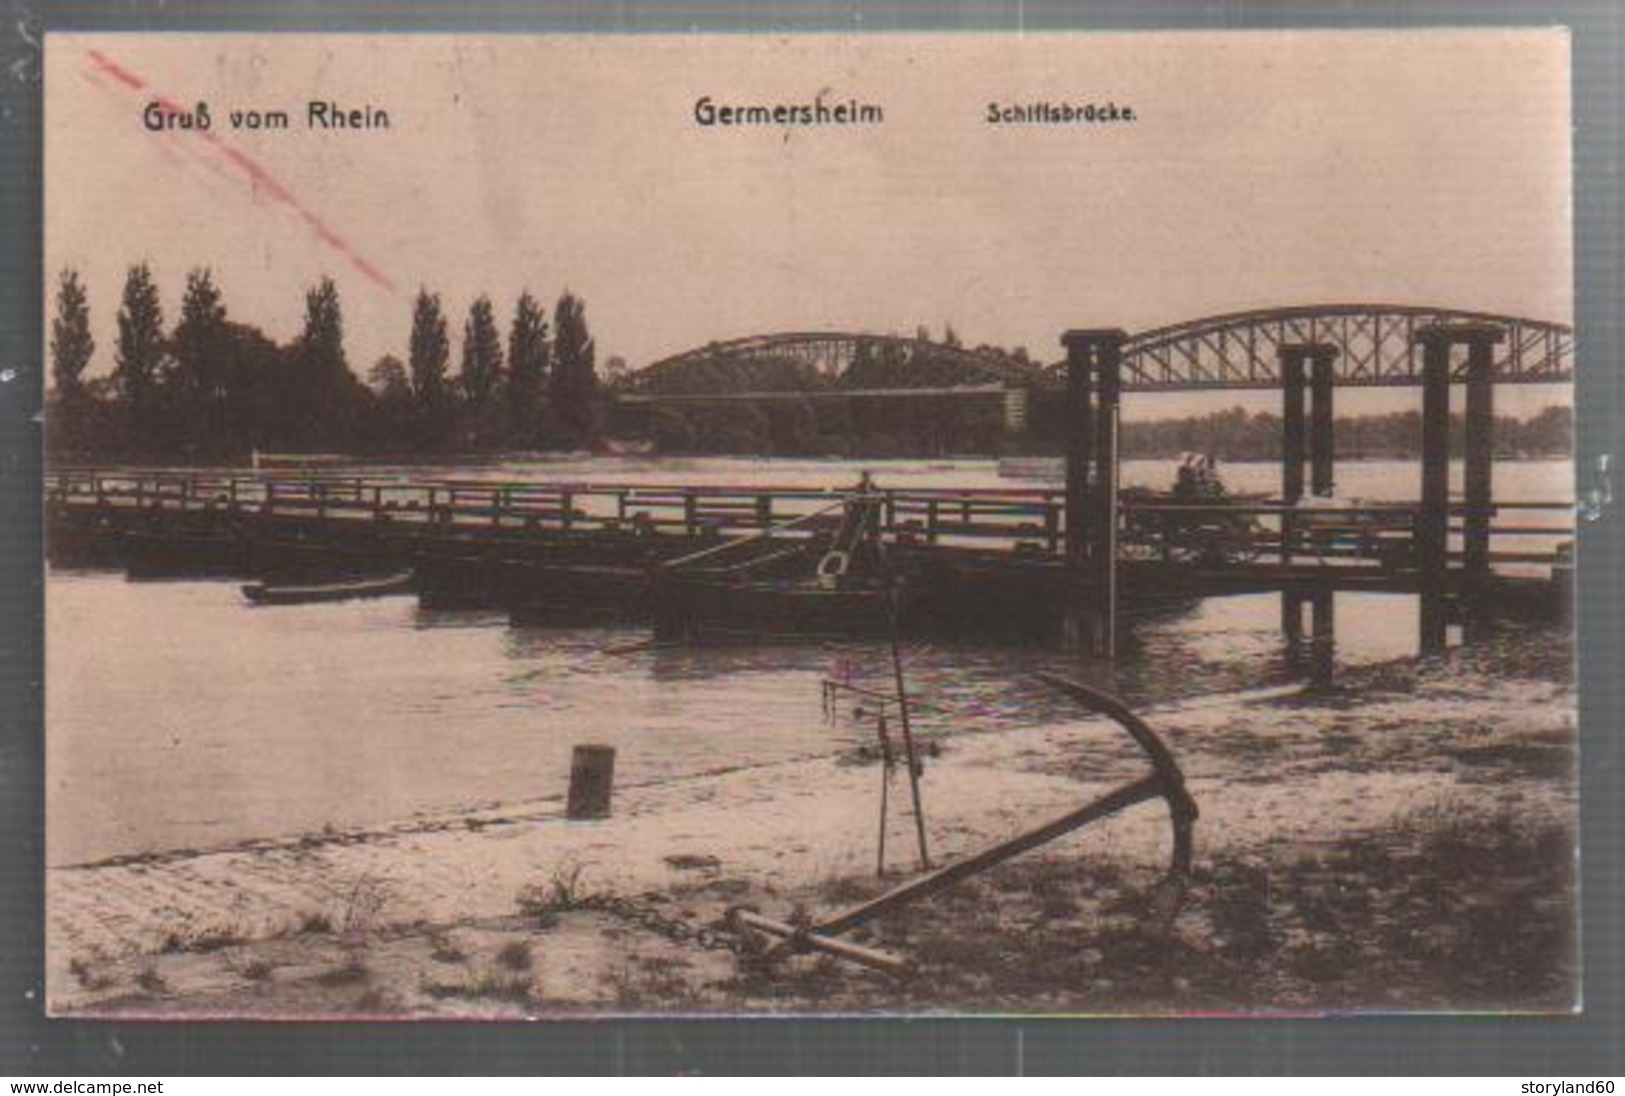 Cpa St002486 Gemersheim Pont De Bateaux Schiffsbrucke Grub Vom Rhein - Germersheim